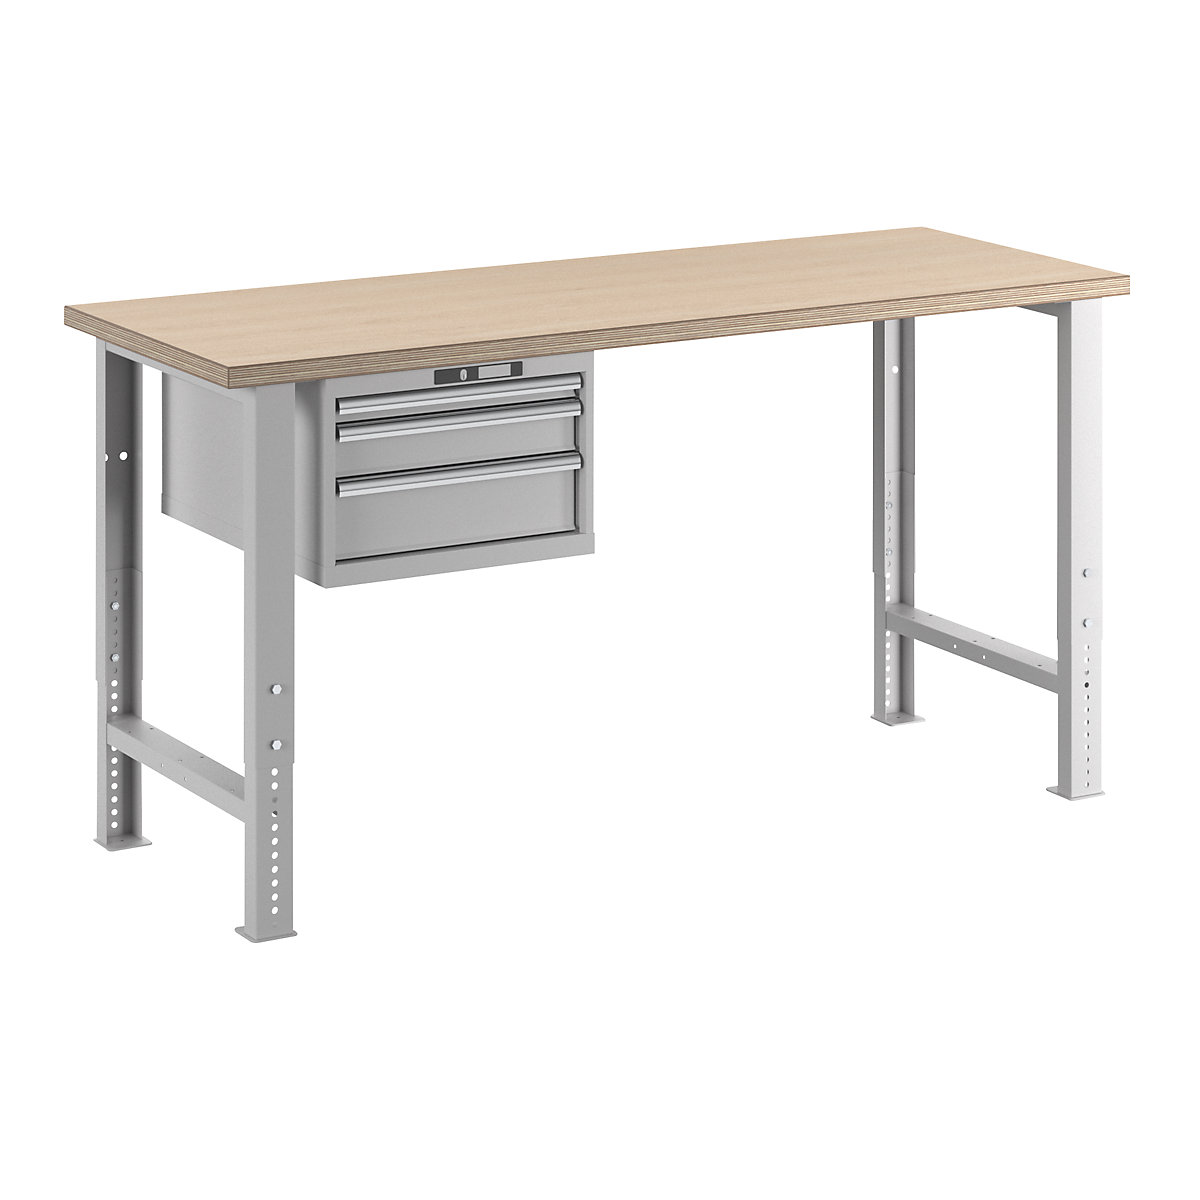 Dílenský stůl ve stavebnicovém systému – LISTA, výška 740 – 1090 mm, závěsná skříň, 3 zásuvky, světle šedá, šířka stolu 2000 mm-14